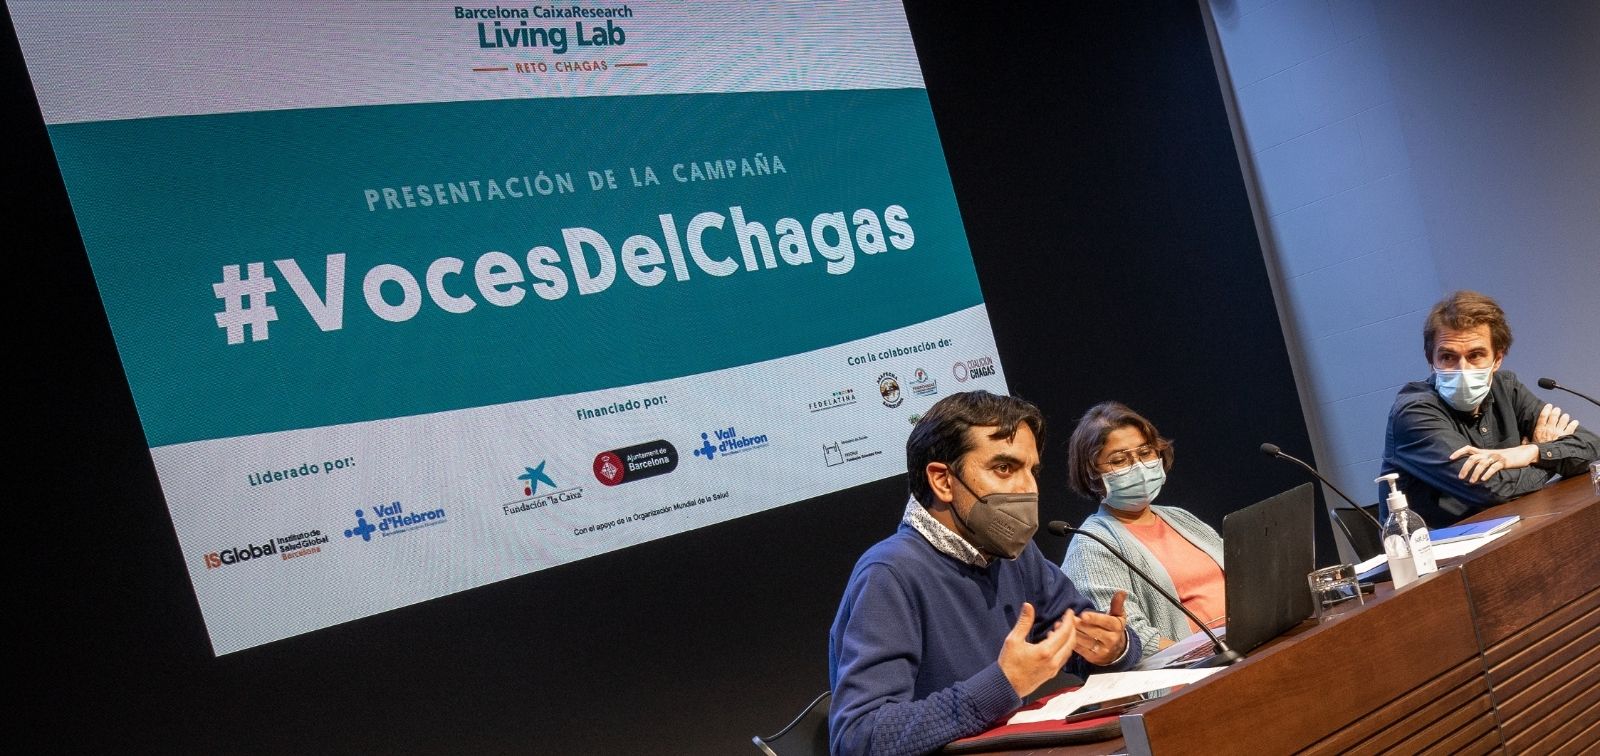 Completamos el reto Chagas en el marco del proyecto Barcelona CaixaResearch Living Lab